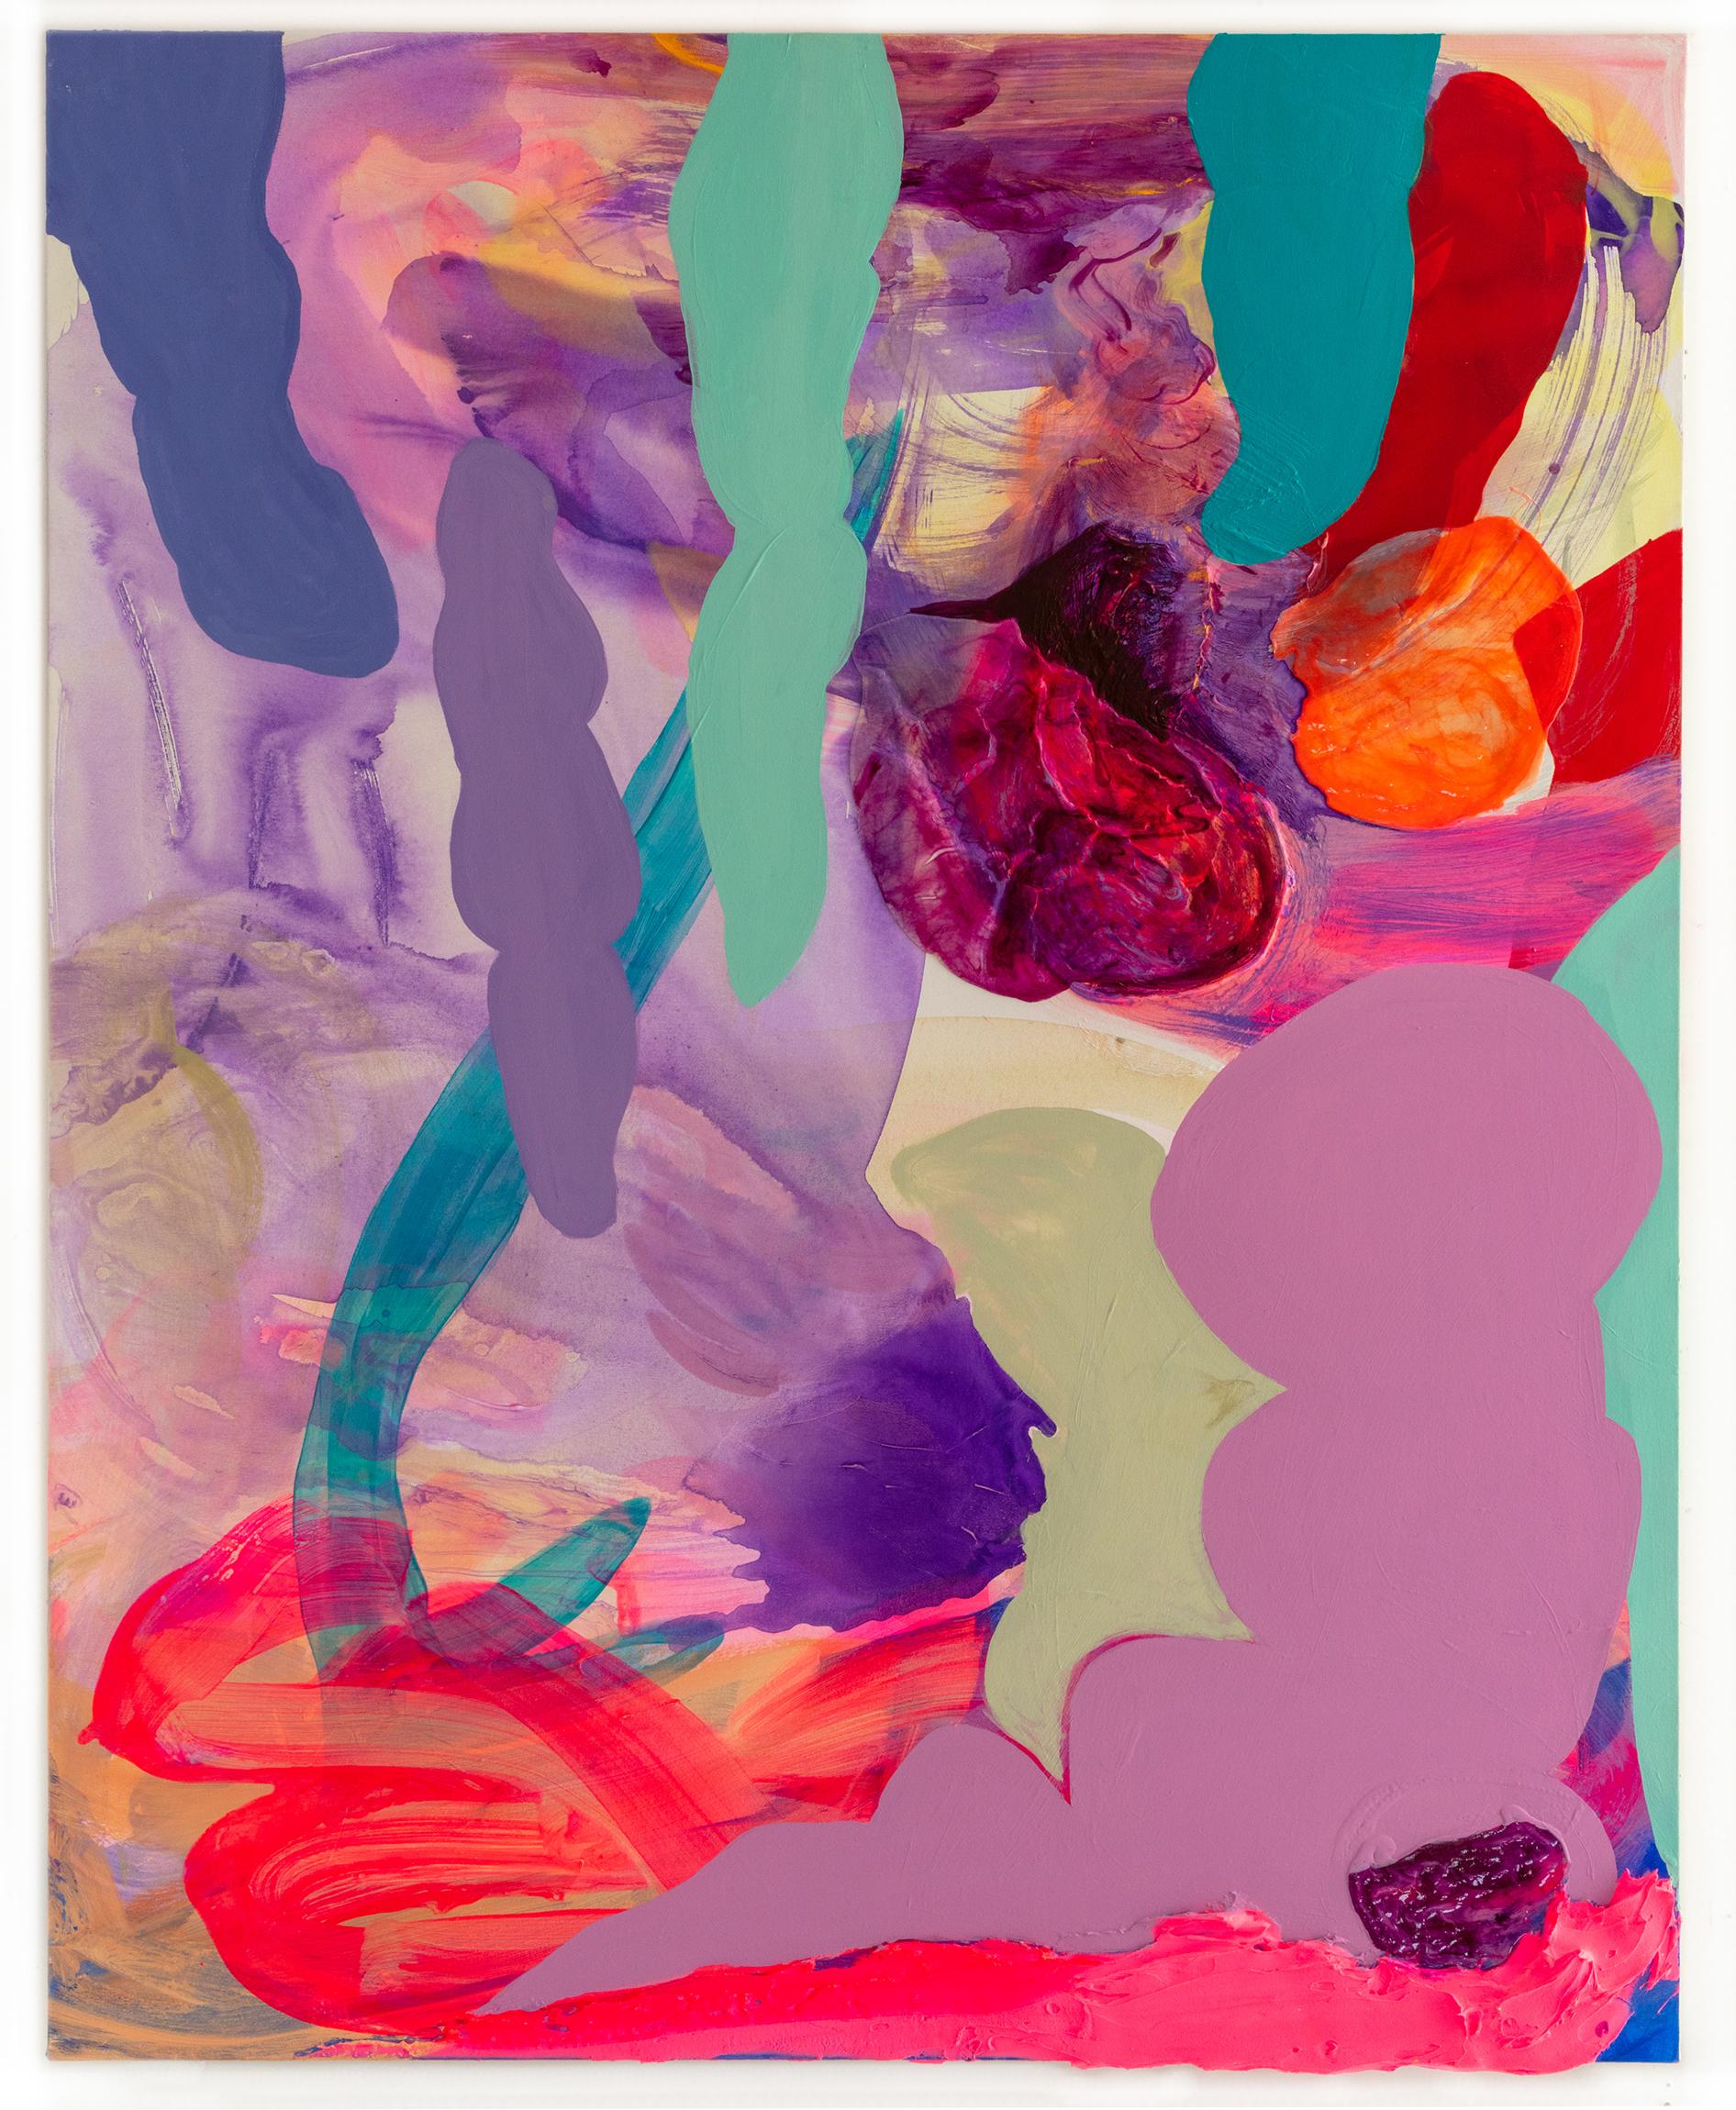 Abstract Painting Debra Drexler - Peinture abstraite contemporaine « Aquatic Forest » en violet, bleu turquoise et rose